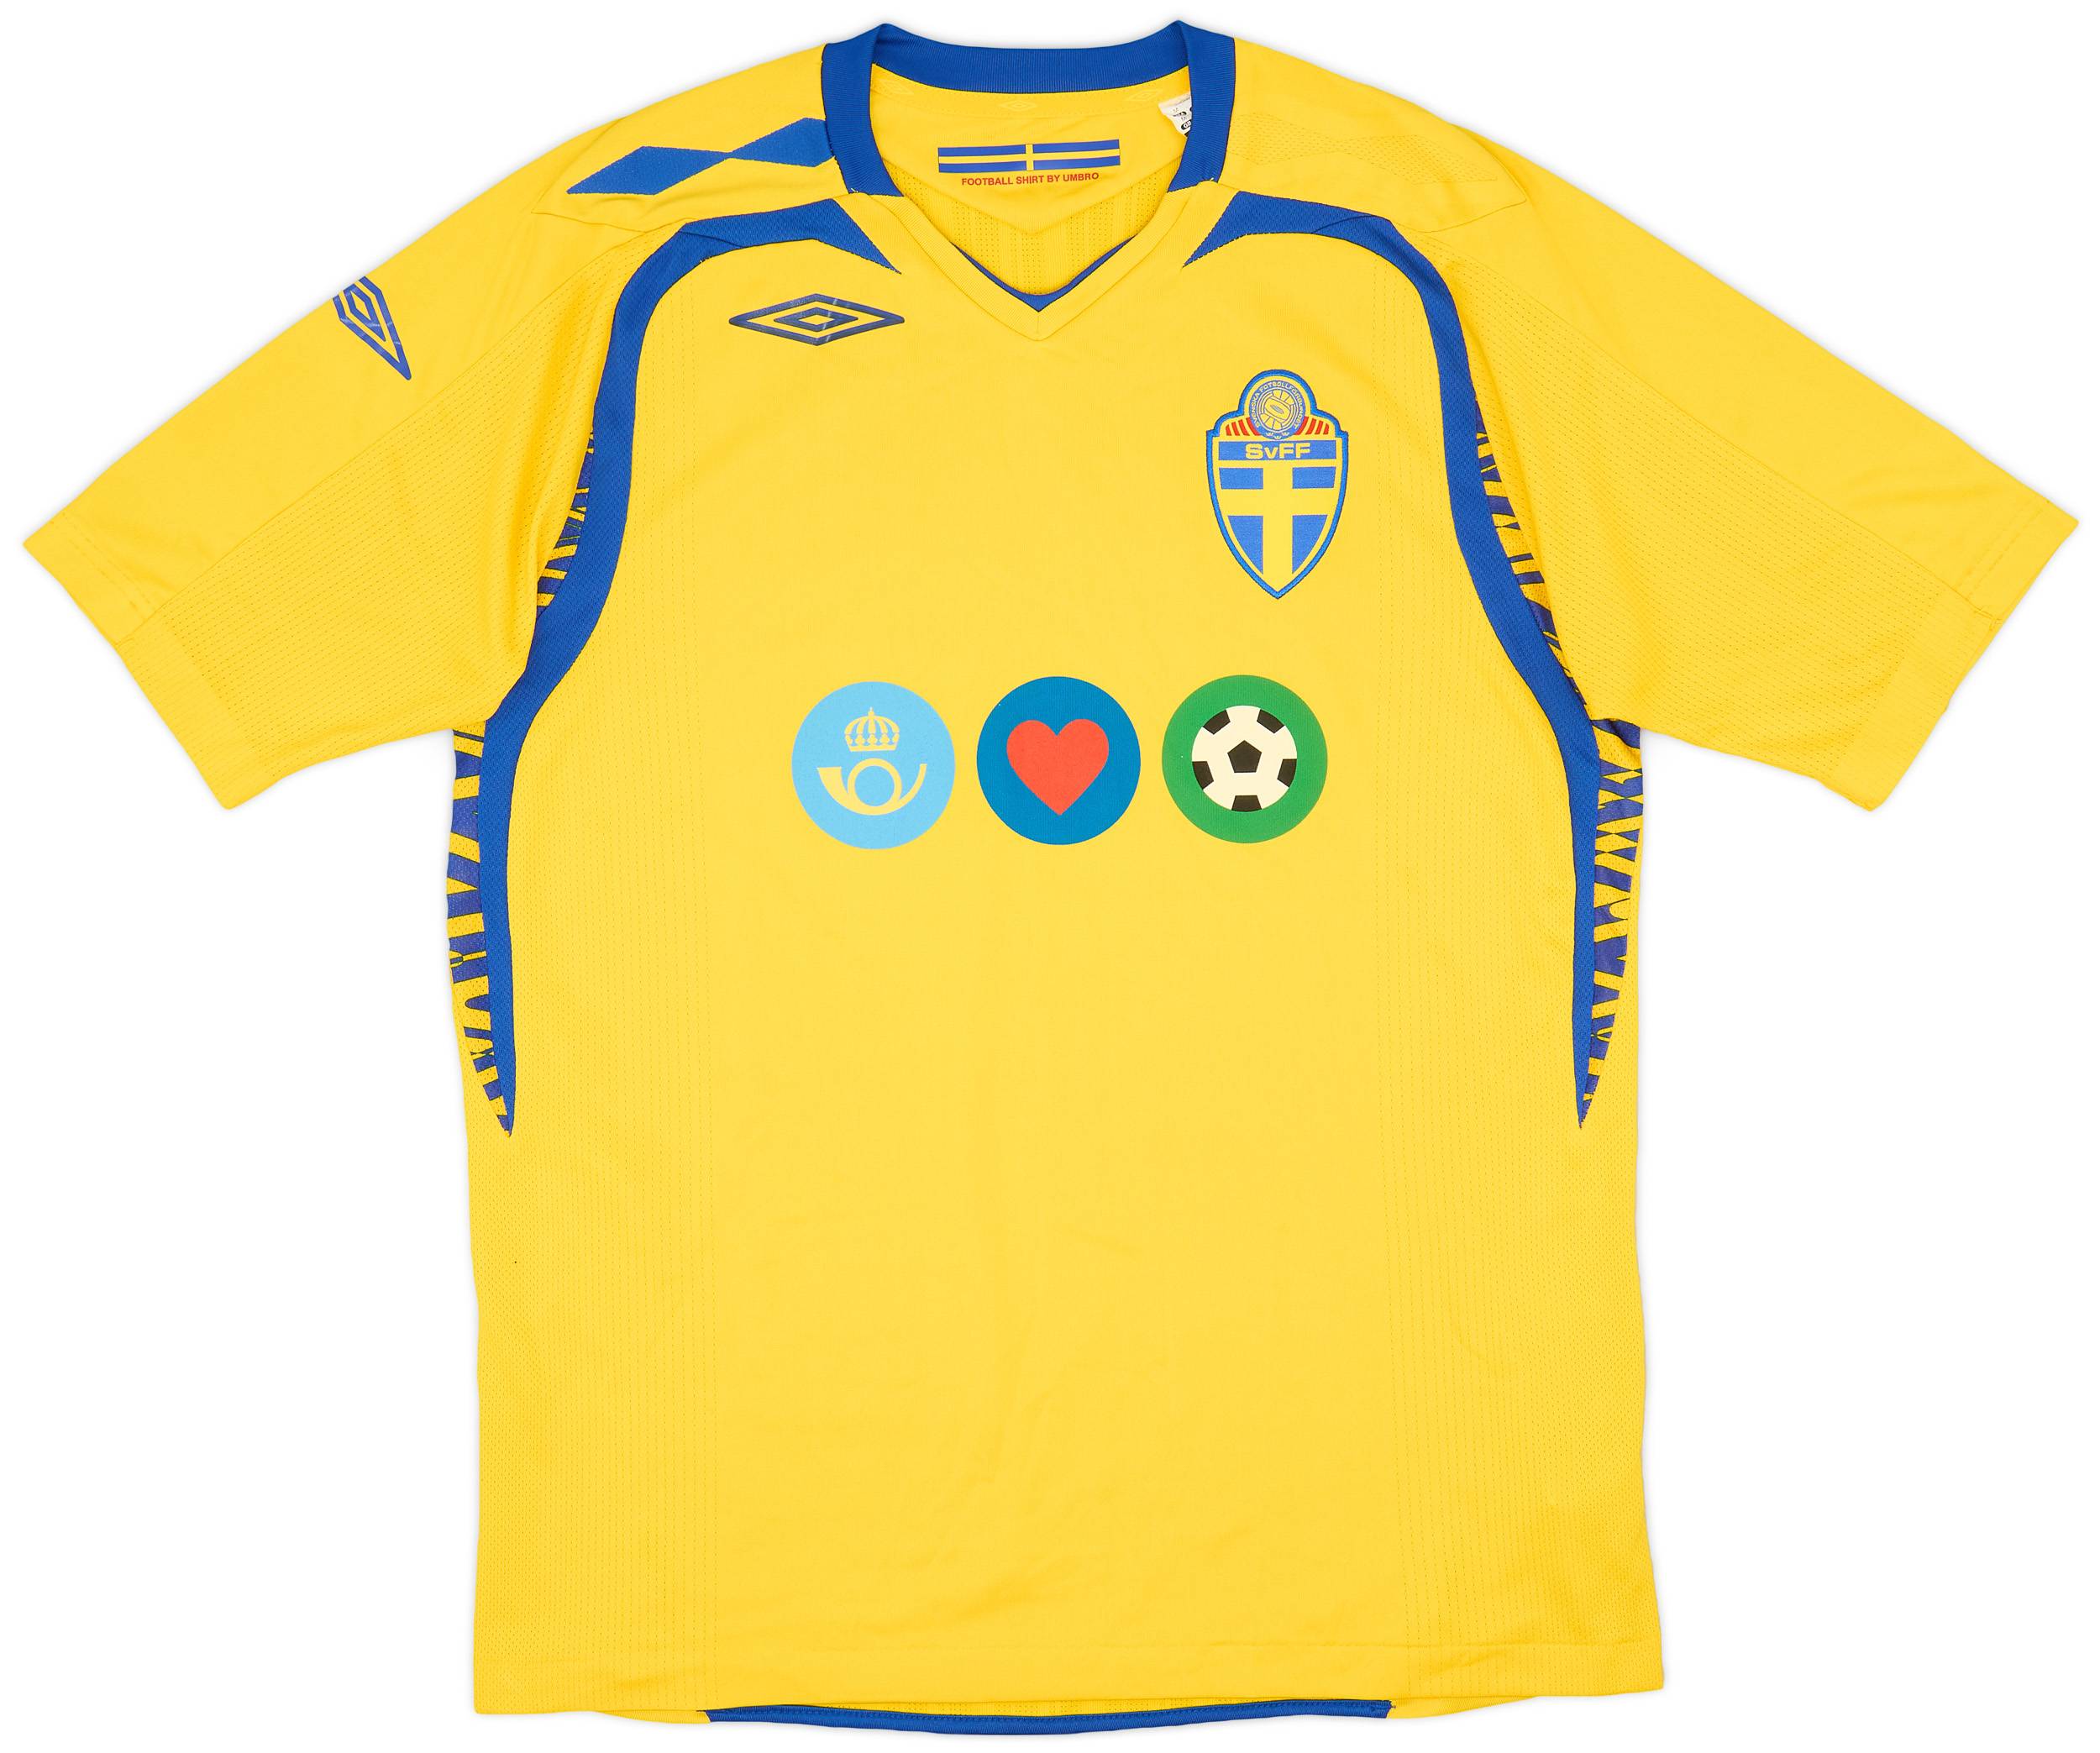 2008-09 Sweden Home Shirt - 9/10 - (M)